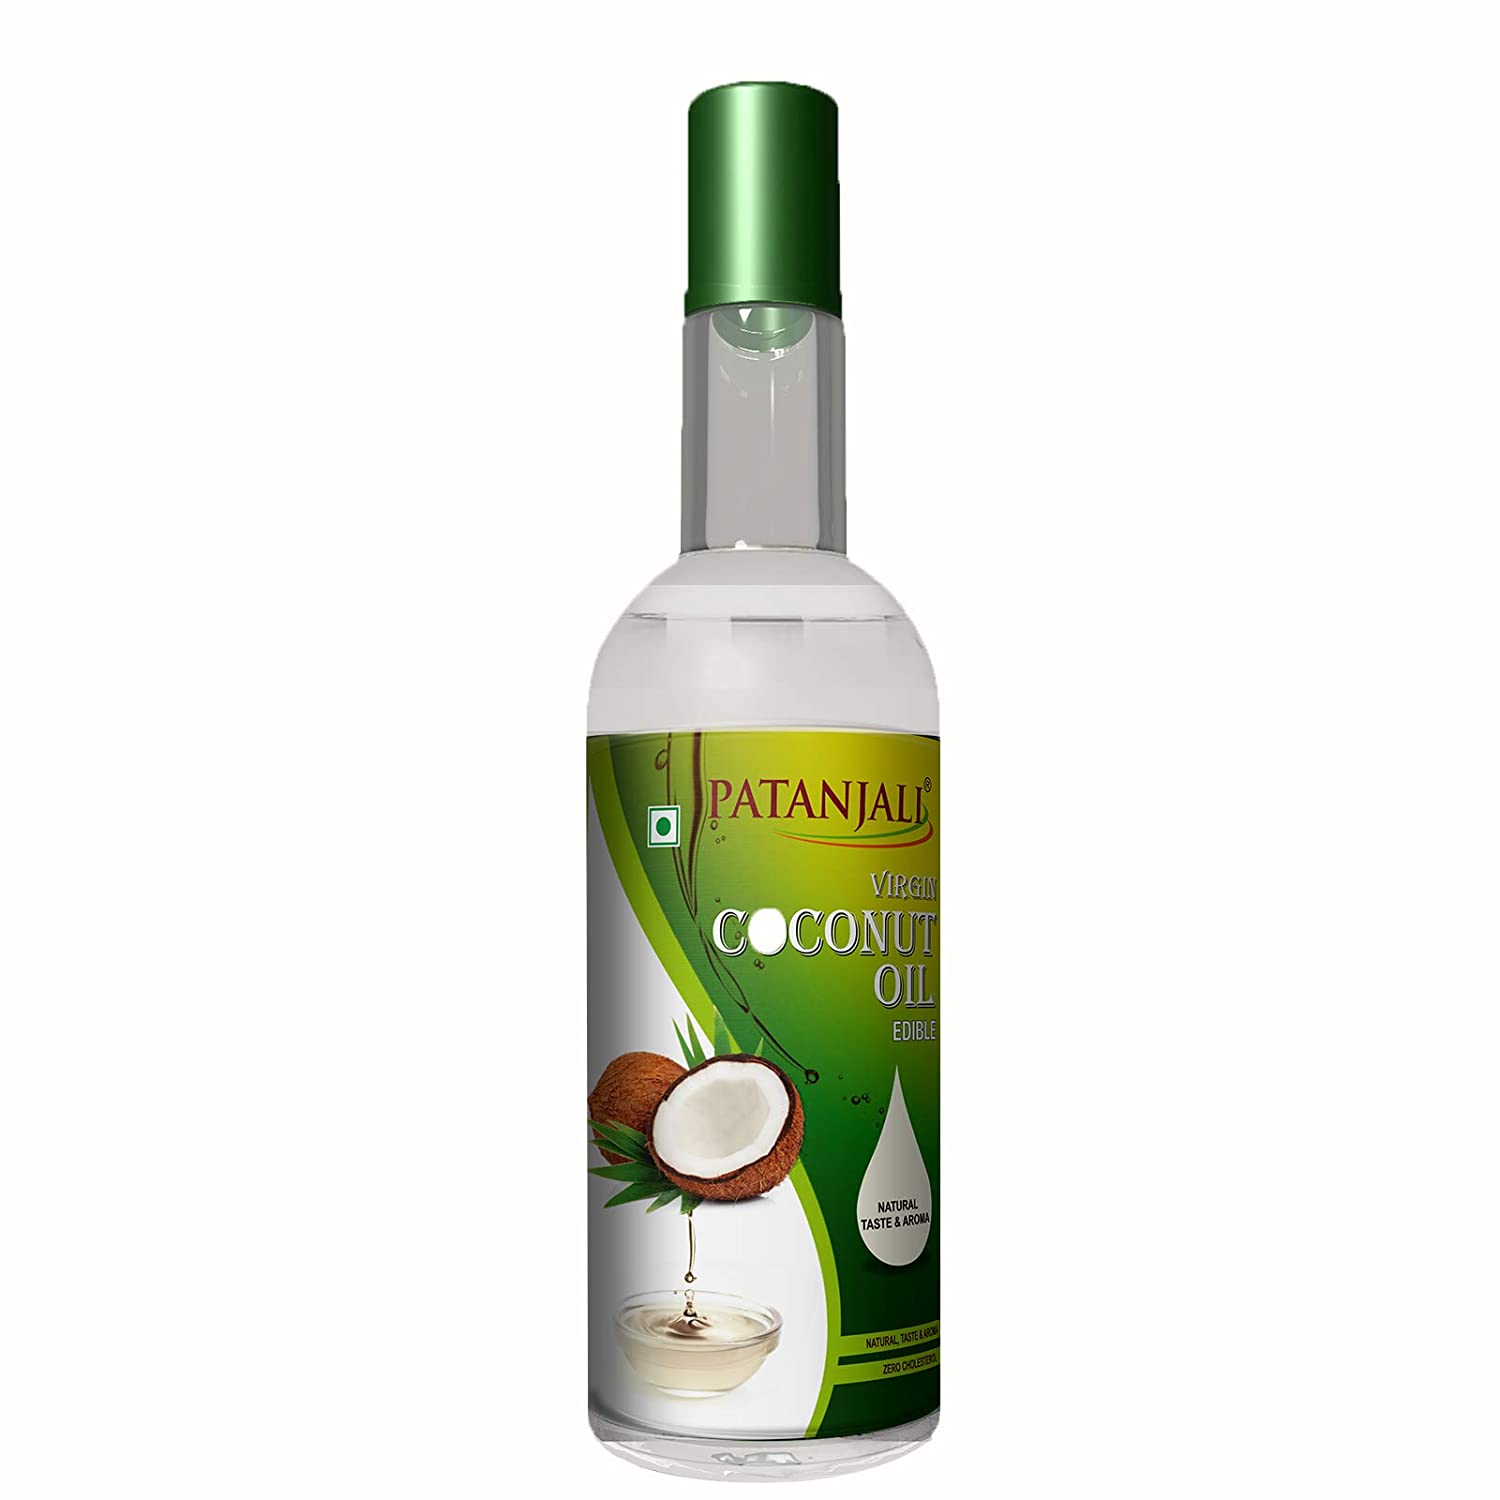 Buy Patanjali Virgin Coconut Oil